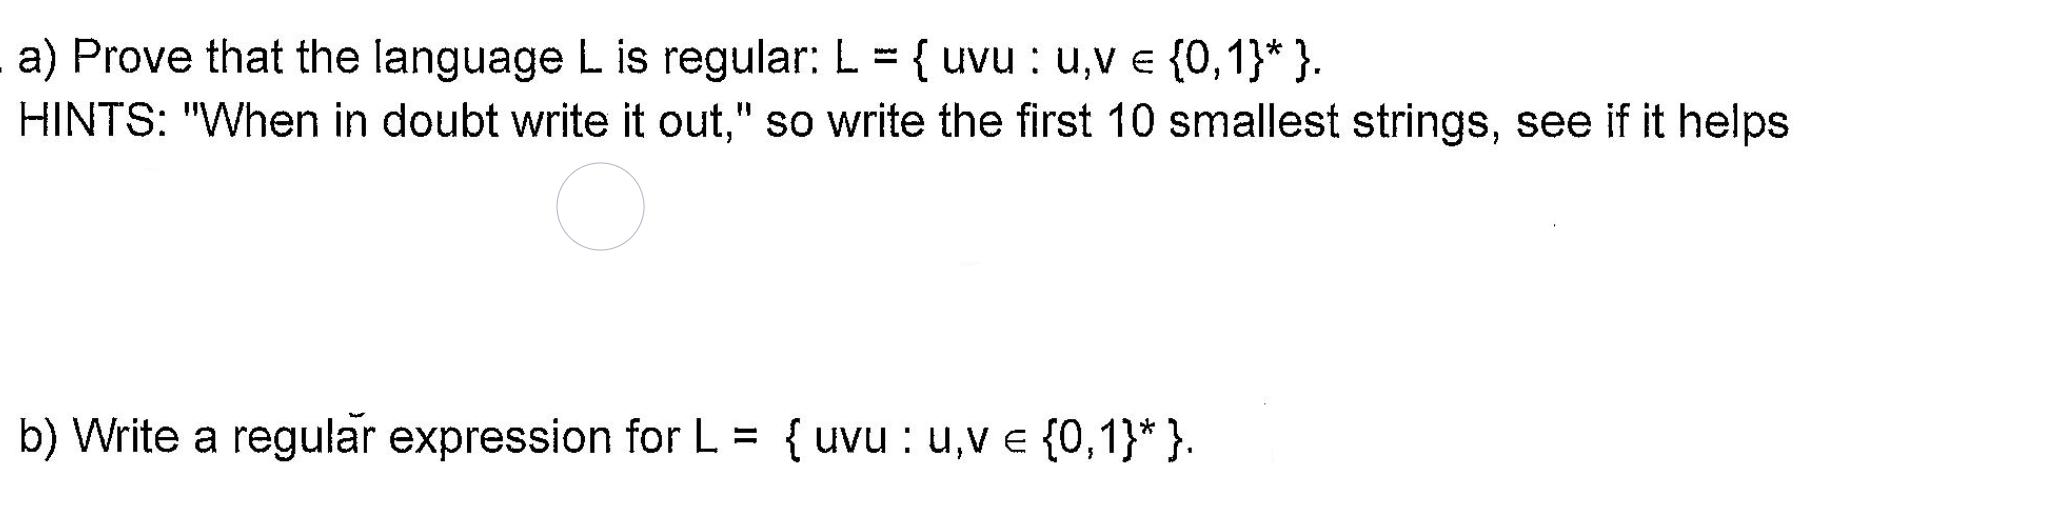 a) Prove that the language L is regular: L = { uvu: u,v = {0,1}* }. HINTS: 